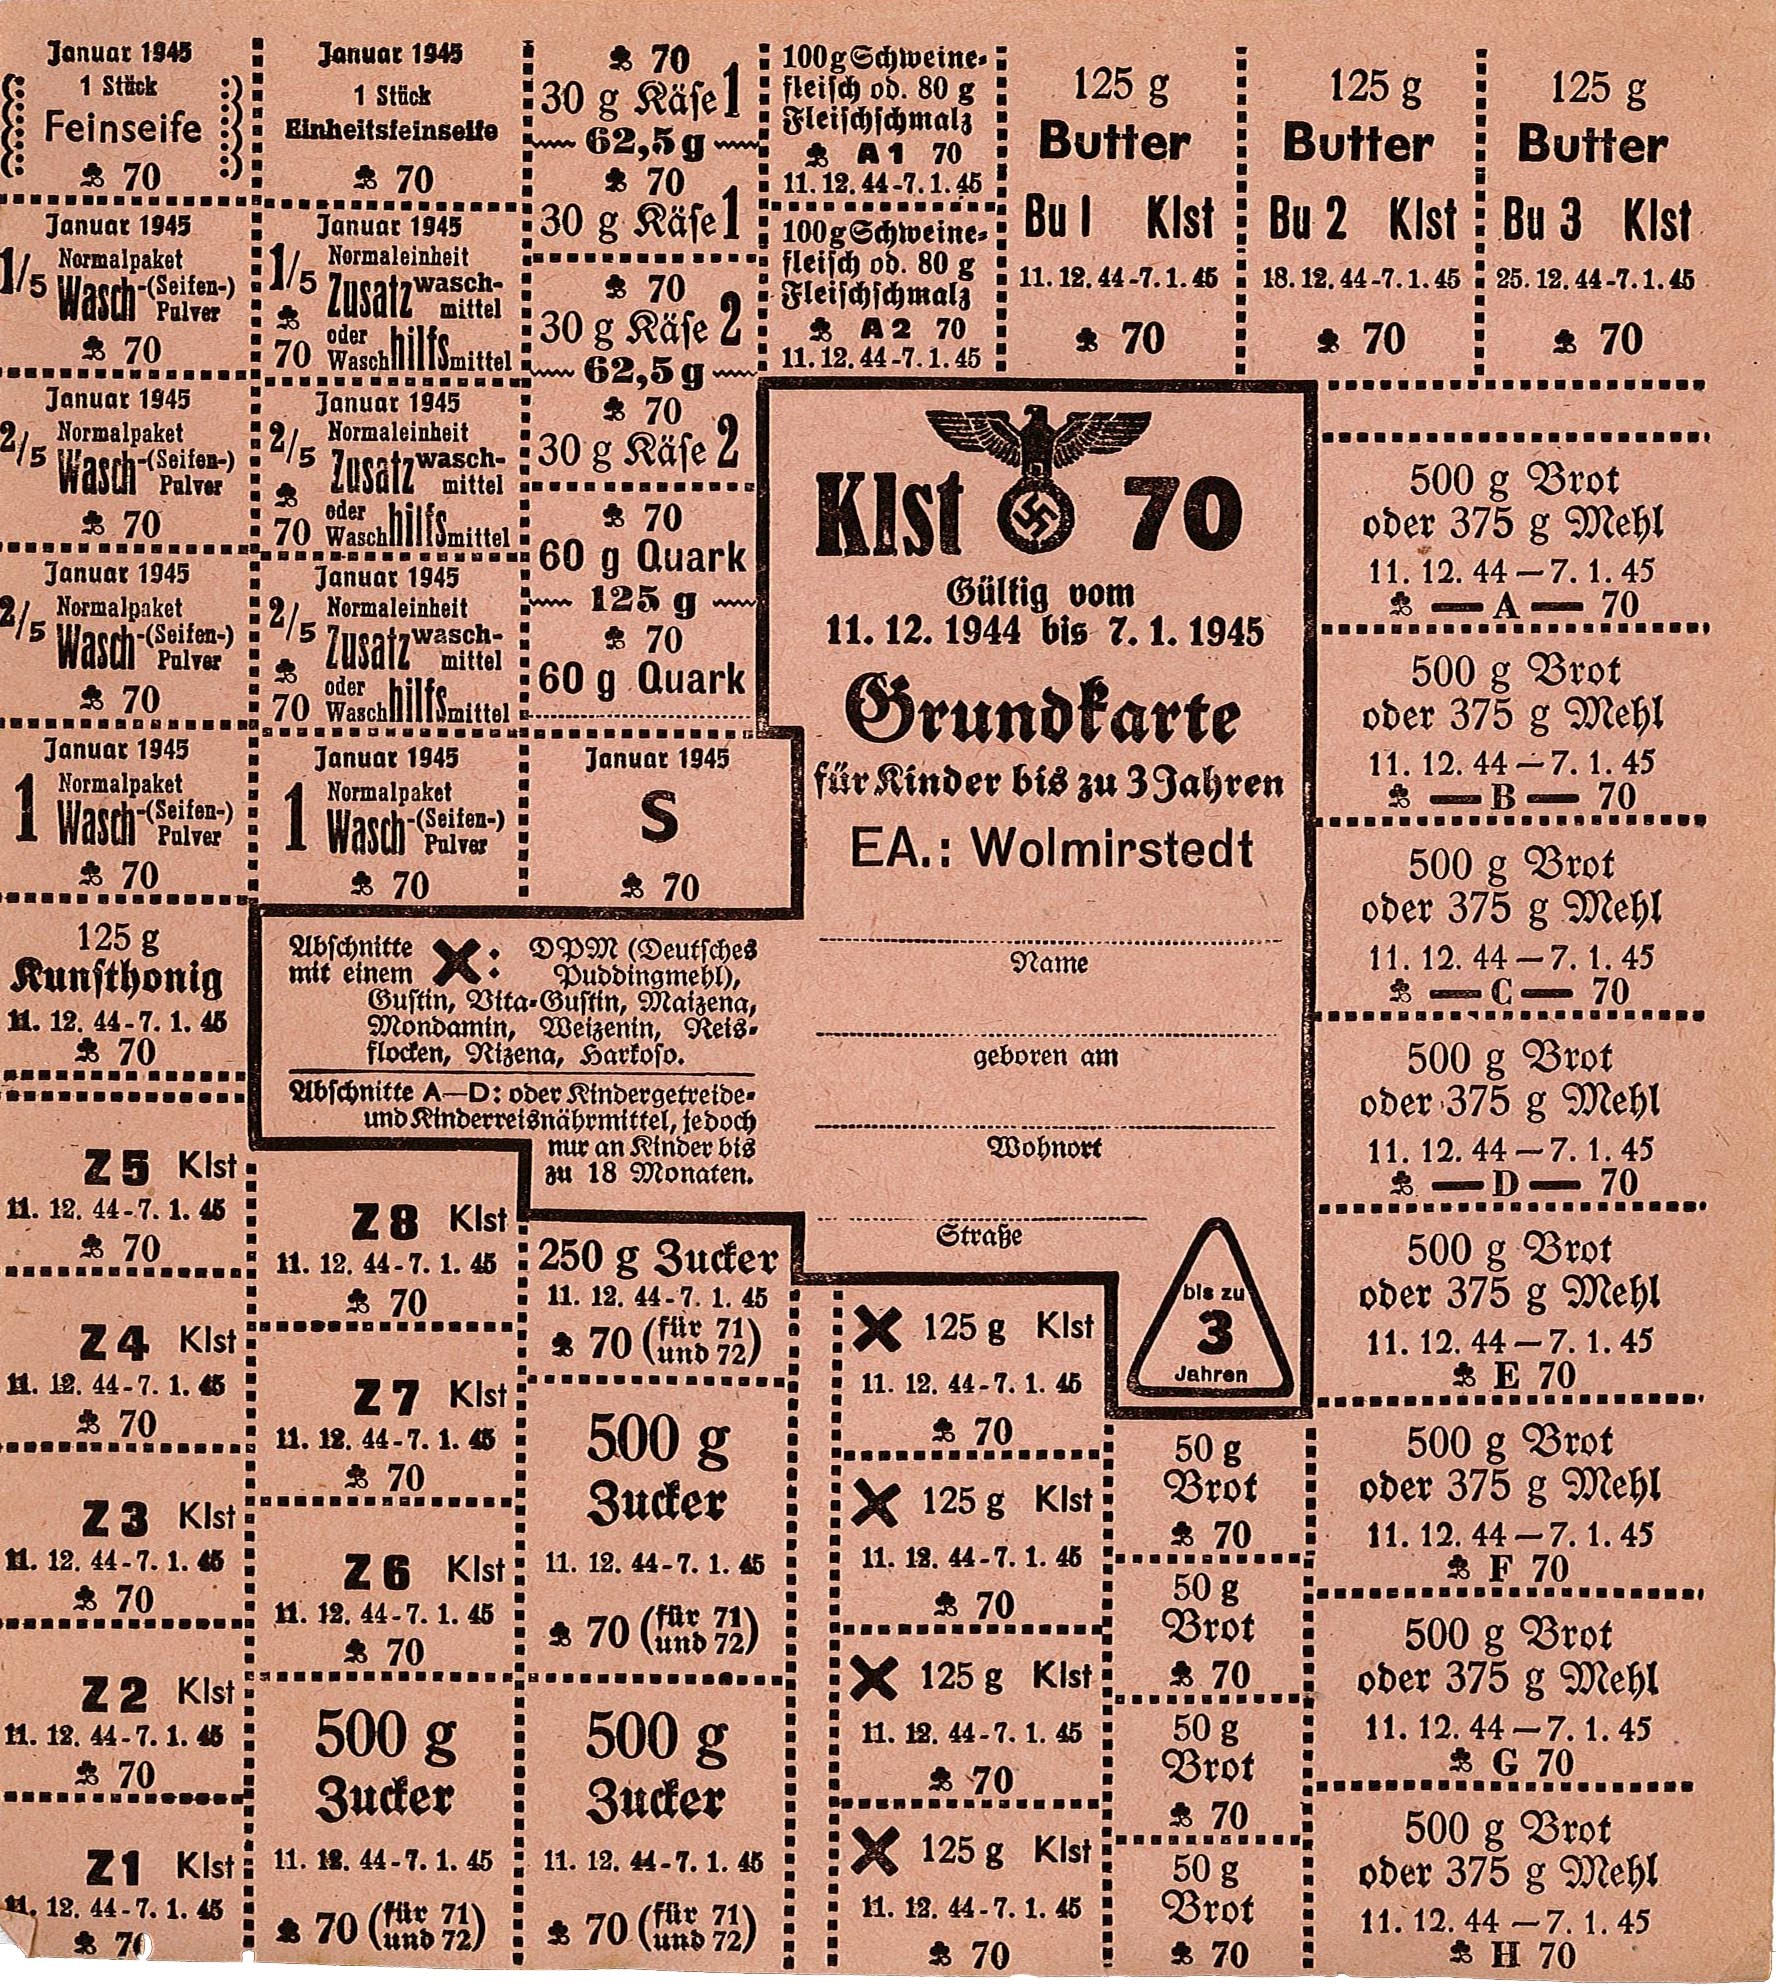 Lebensmittelkarte - Grundkarte für Kinder bis zu 3 Jahren (Zeitraum 11.12.1944 - 07.01.1045) (Museum Wolmirstedt RR-F)